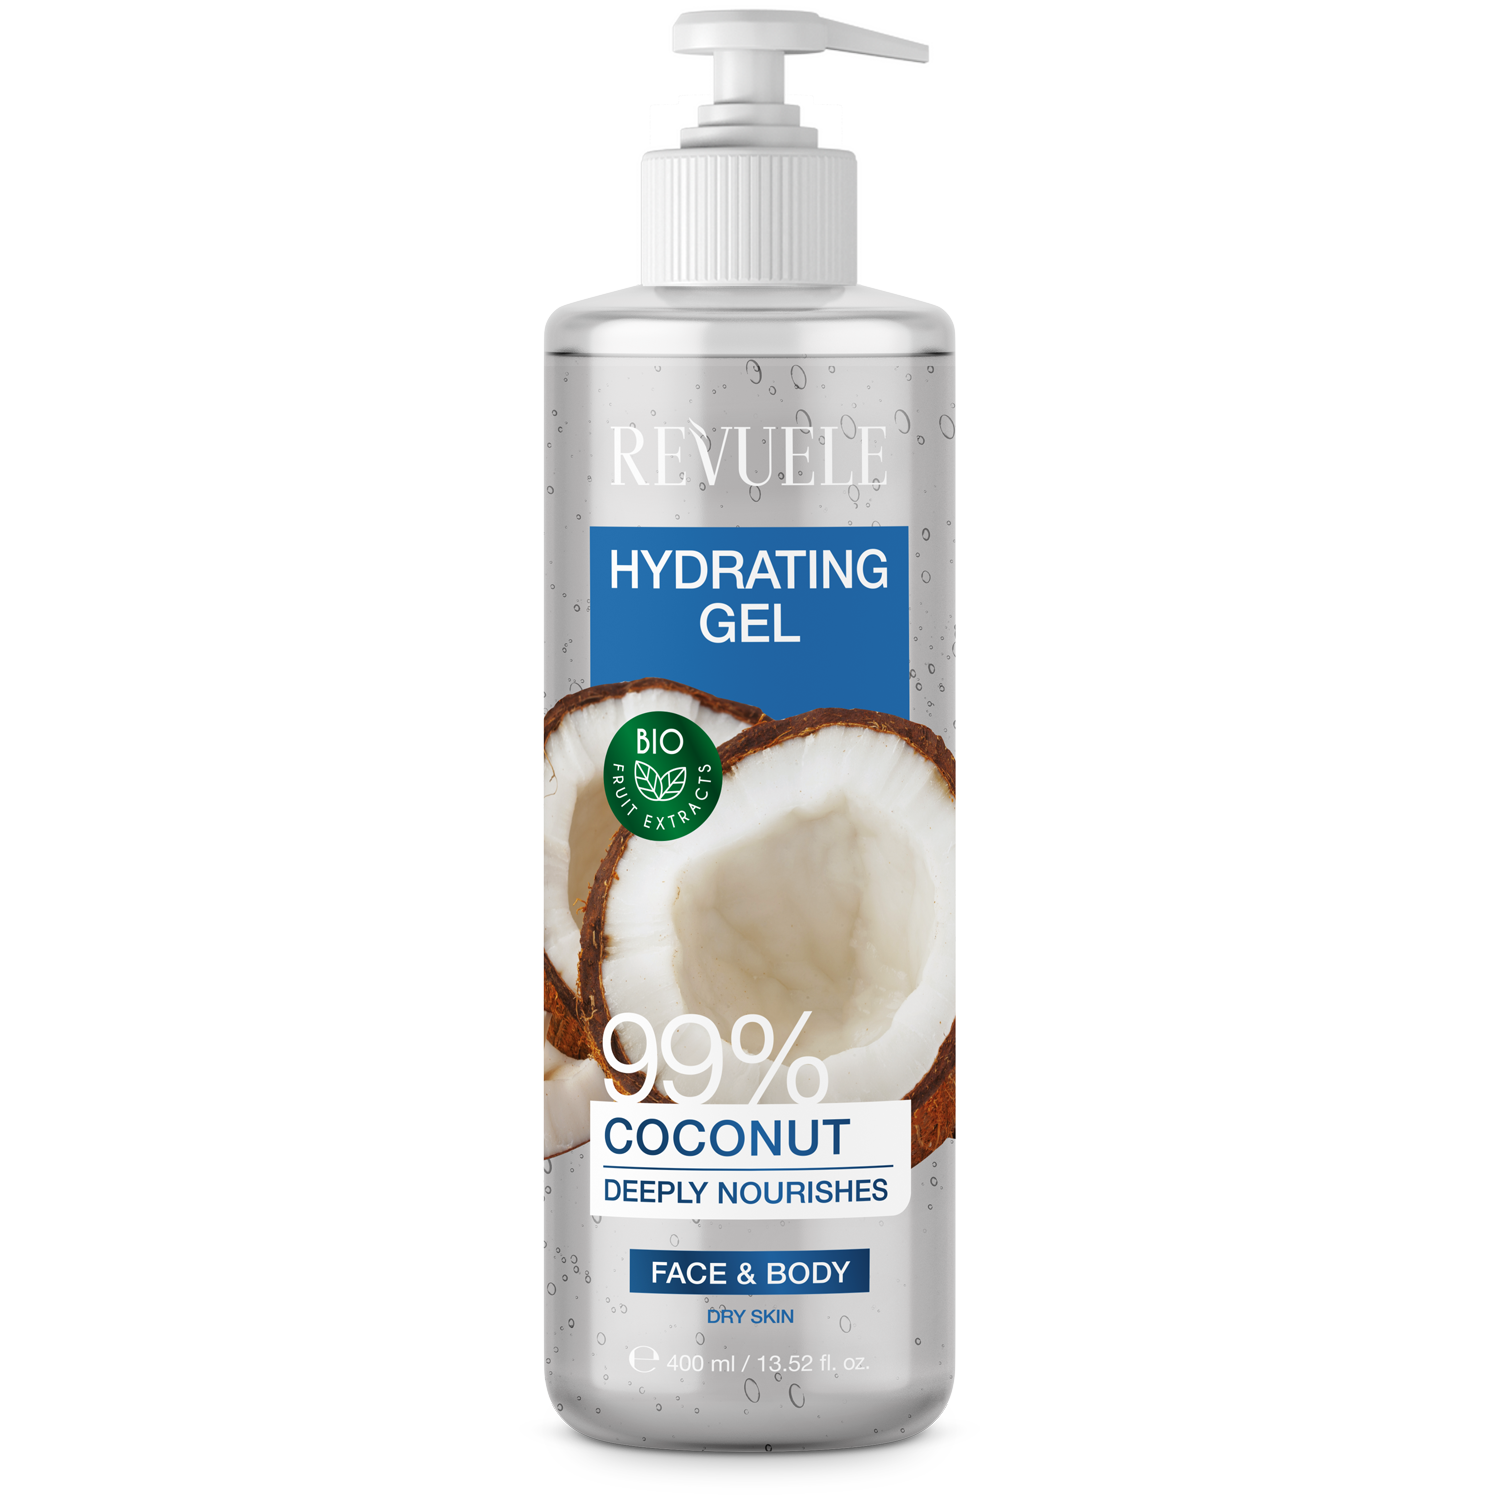 Гель кокосовый 99%. Bottega Verde кокосовый гель. Styling Gel Coconut. Кокосовый гель для волос в банке. Coconut gel